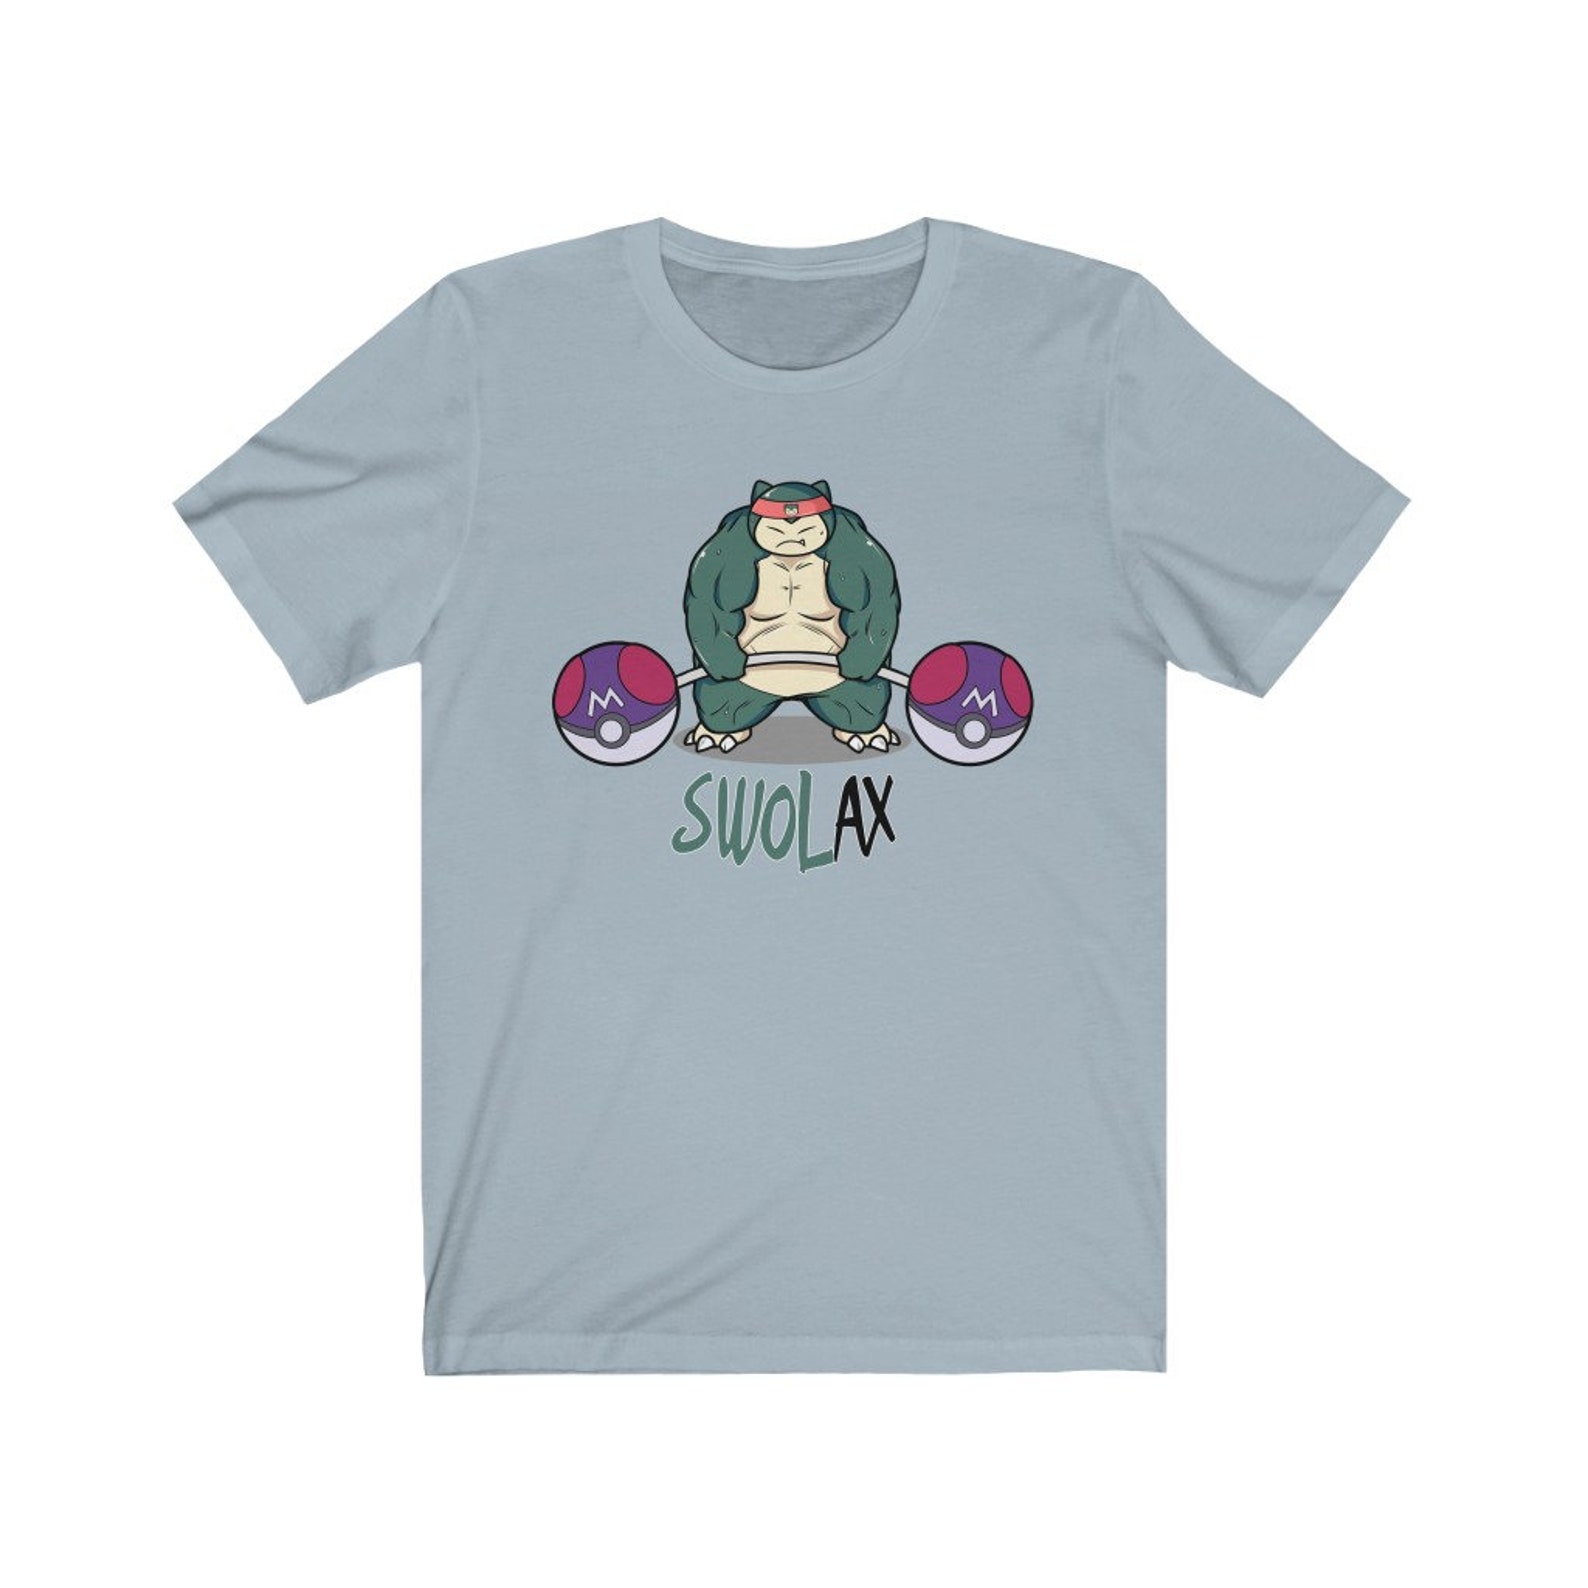 Swolax Pokemon T-Shirt Gym Tee Swole Pokemon Snorlax | Etsy